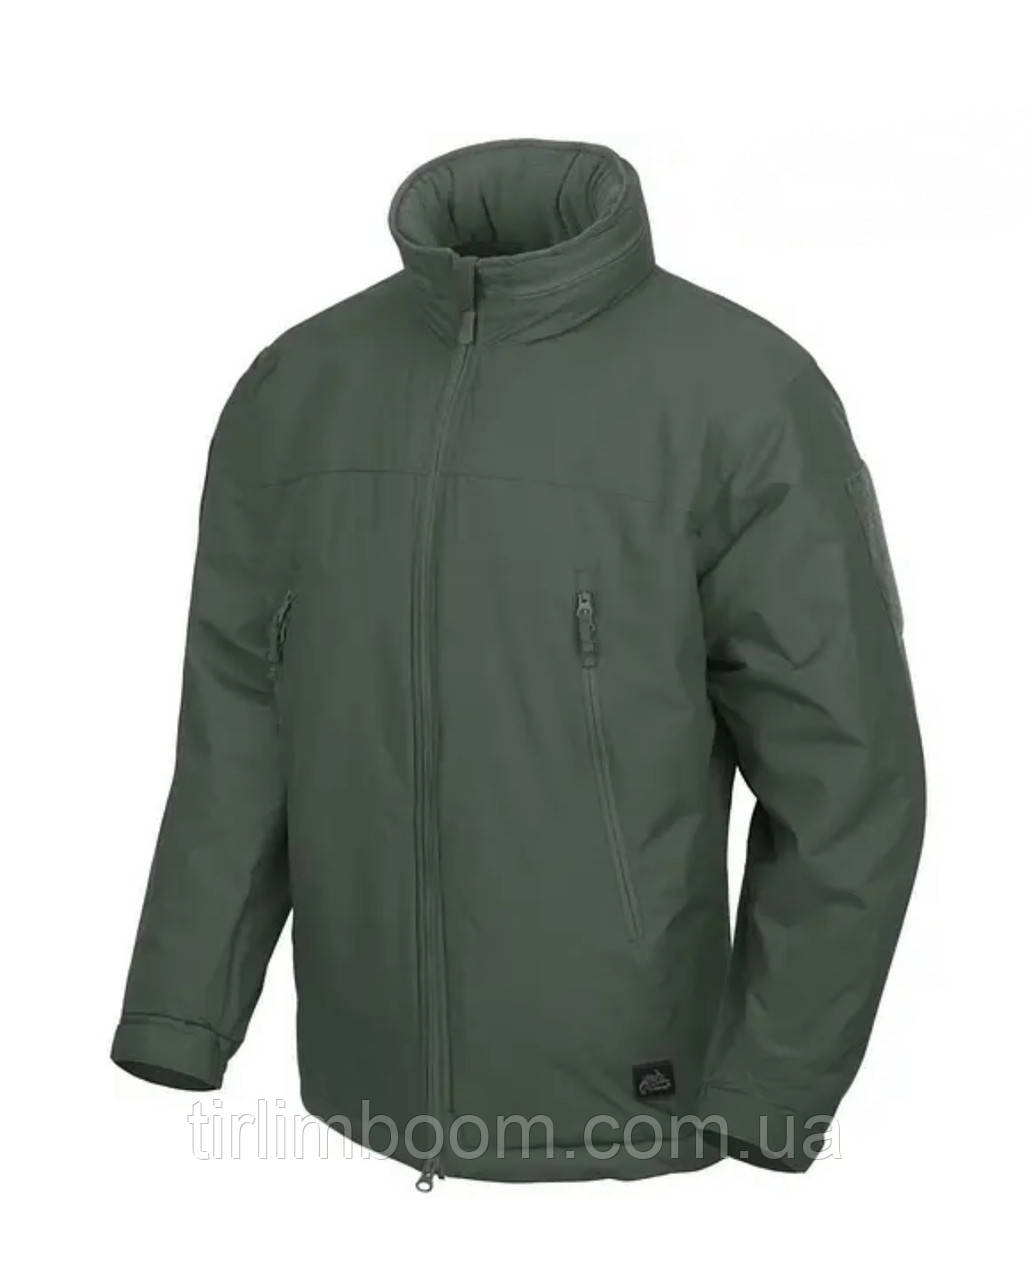 Зимова тактична куртка Helikon-tex Level 7 Climashield олива розмір S олива